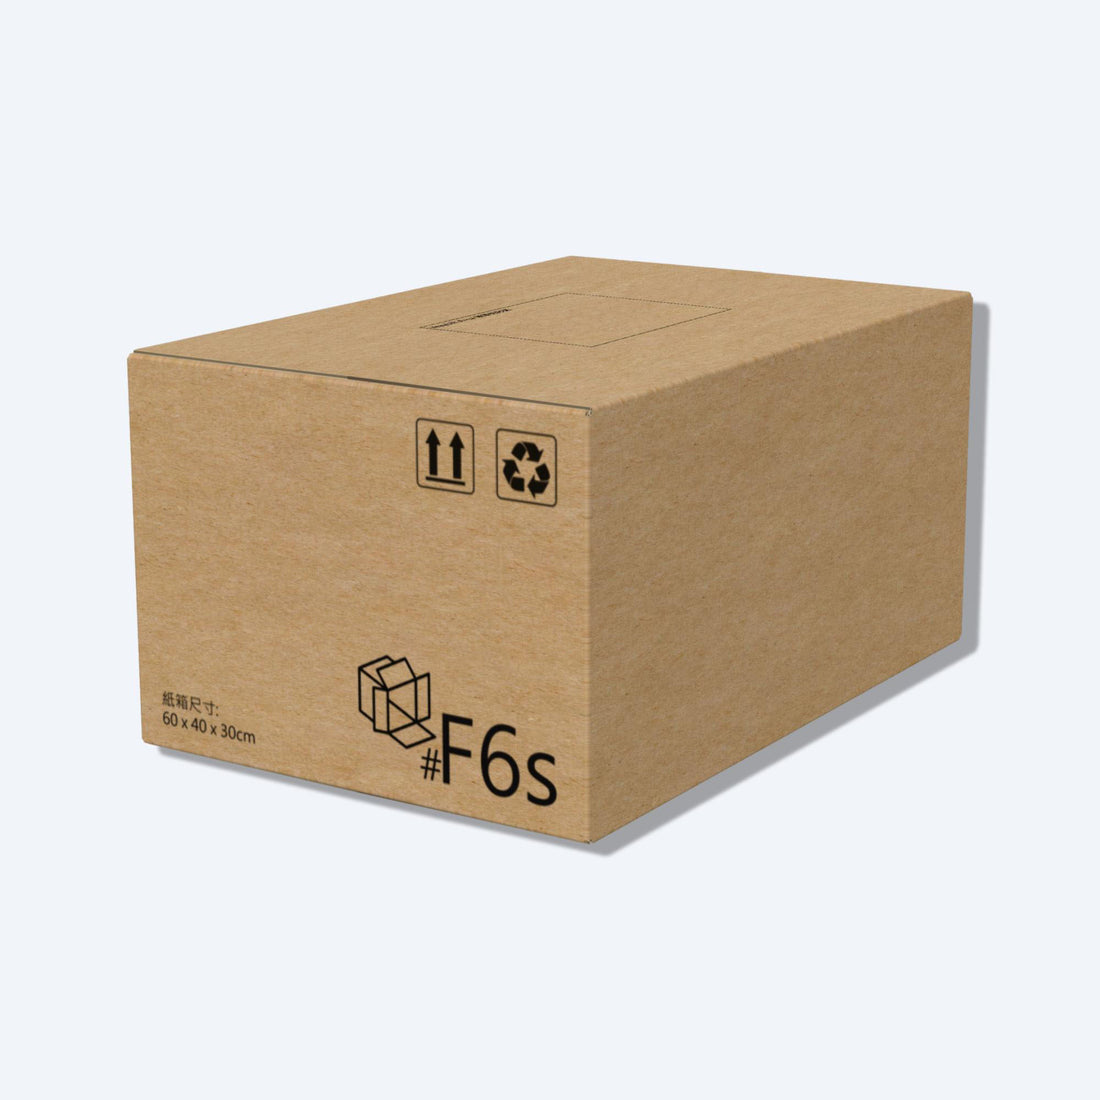 堅固的啡色順豐速運F6s尺寸紙箱正面圖，這款快遞紙箱專為順豐速運設計。